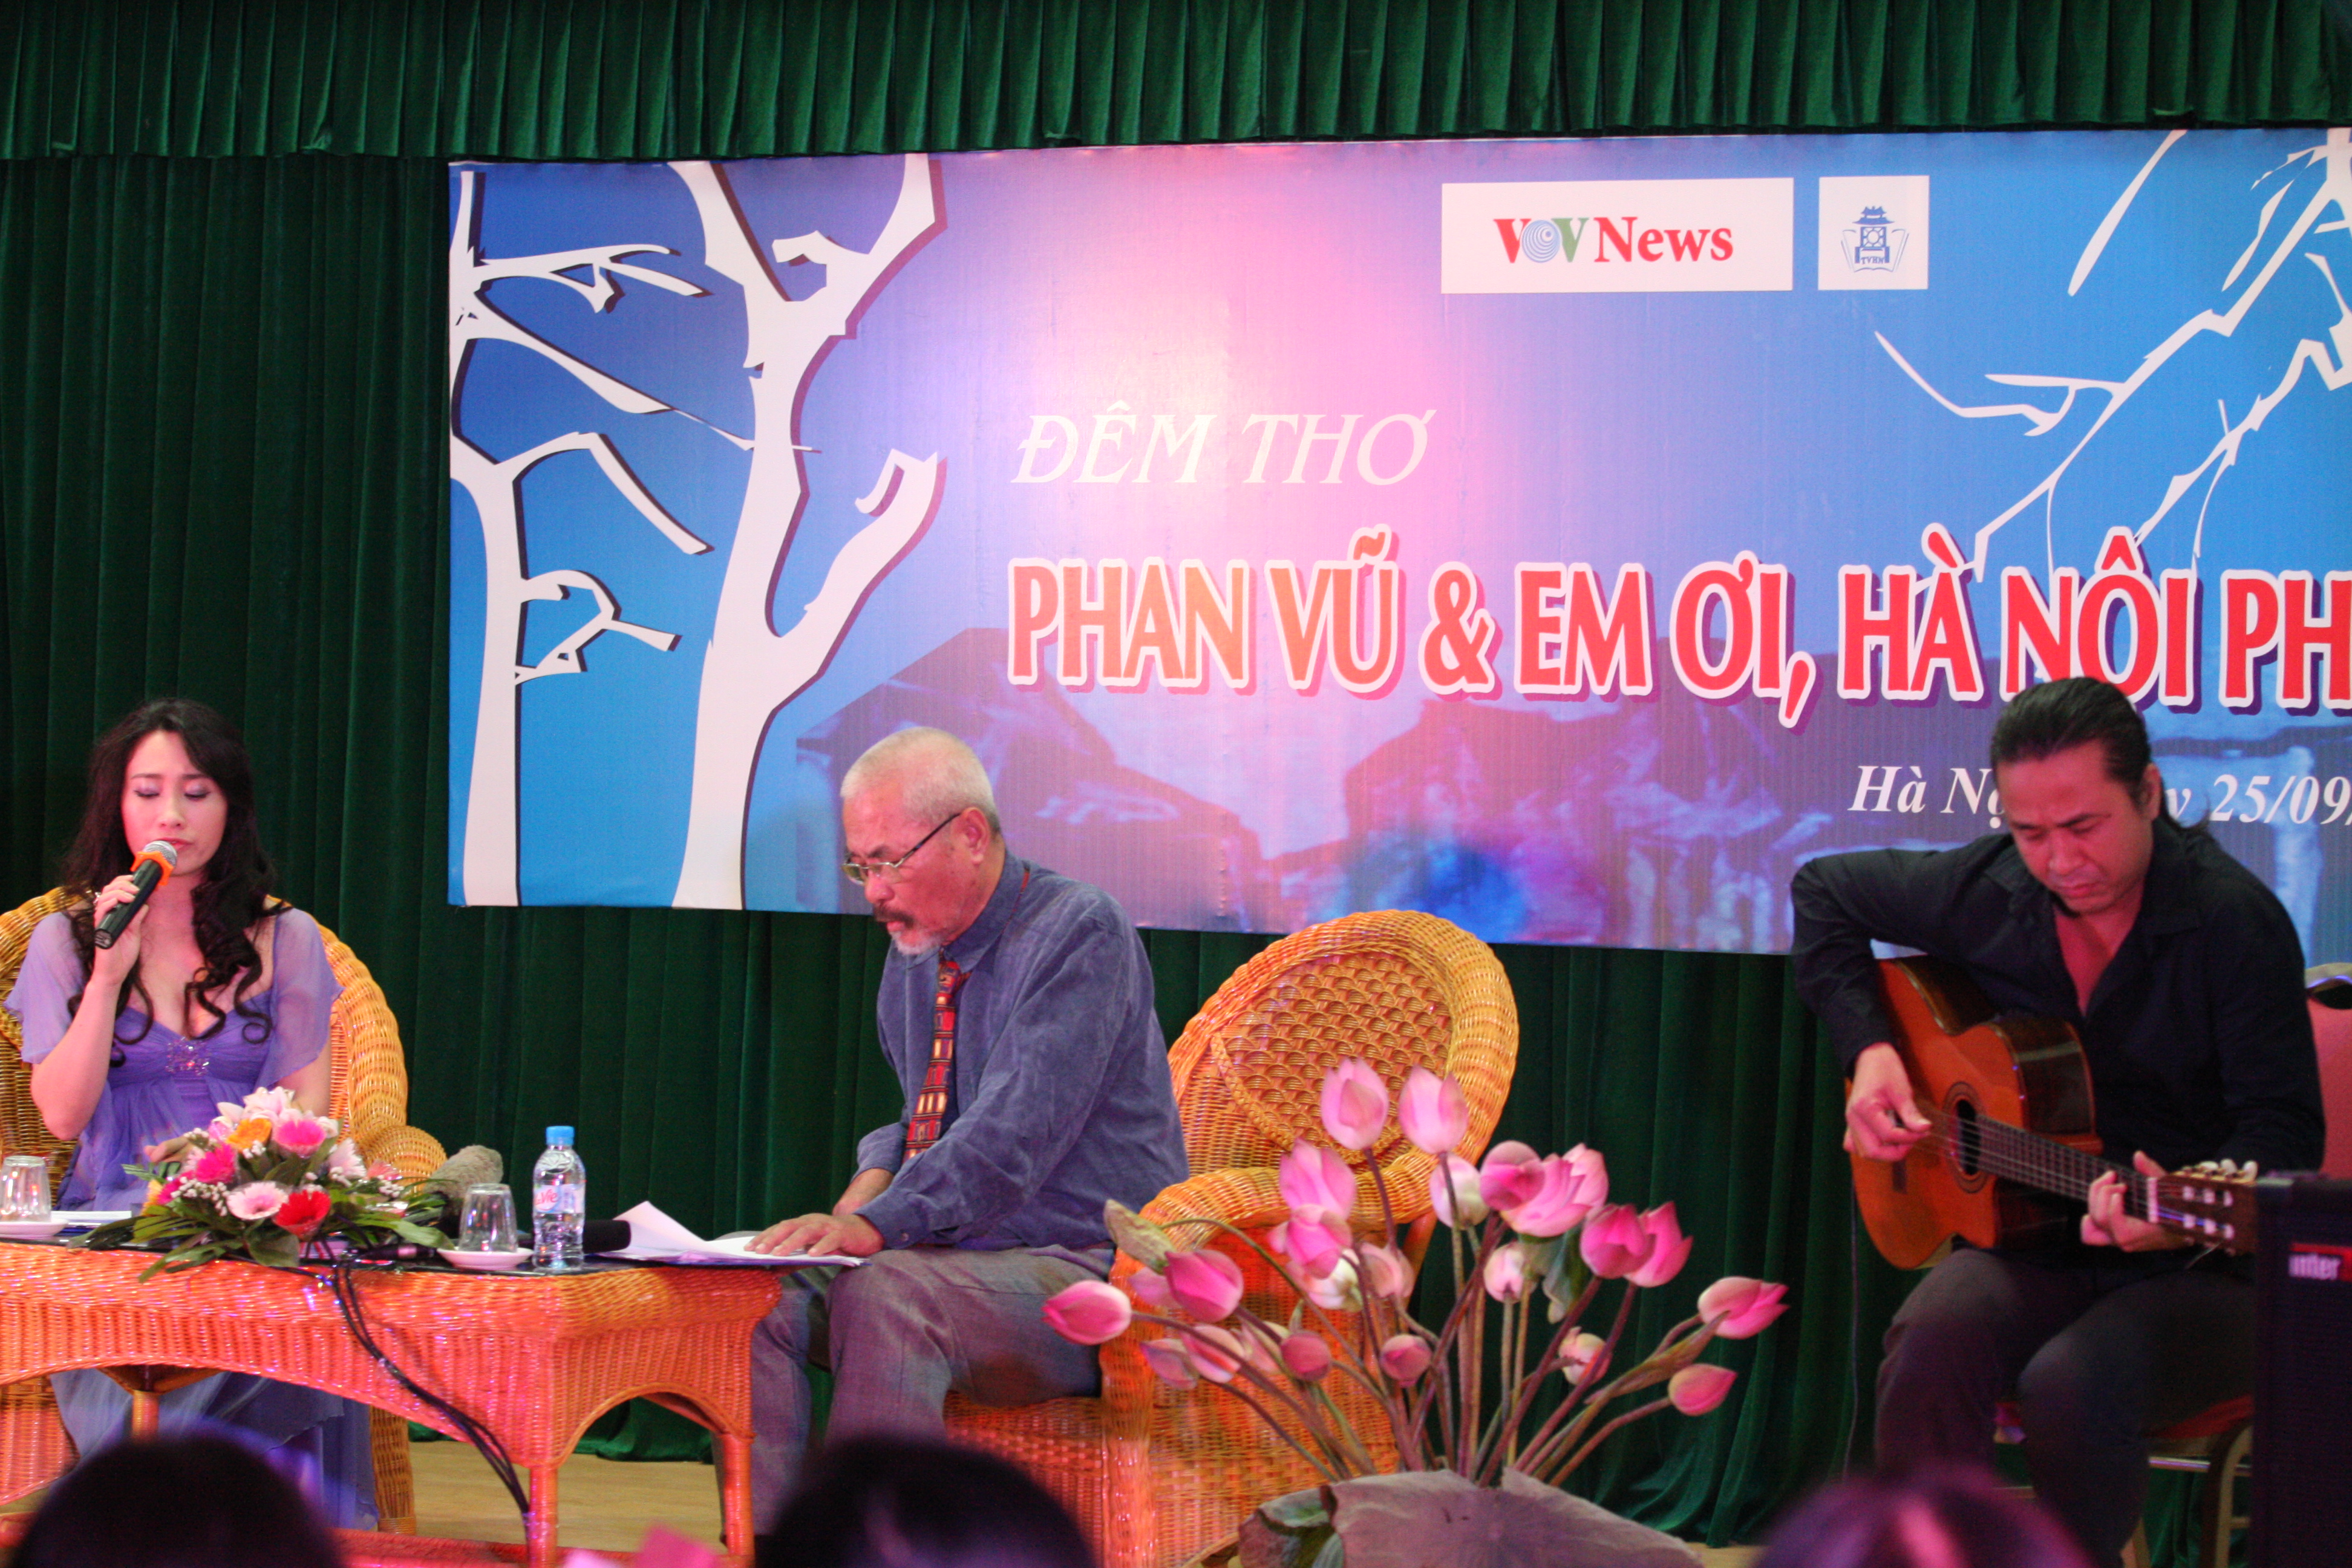 Đêm thơ Phan Vũ và em ơi Hà Nội phố năm 2010